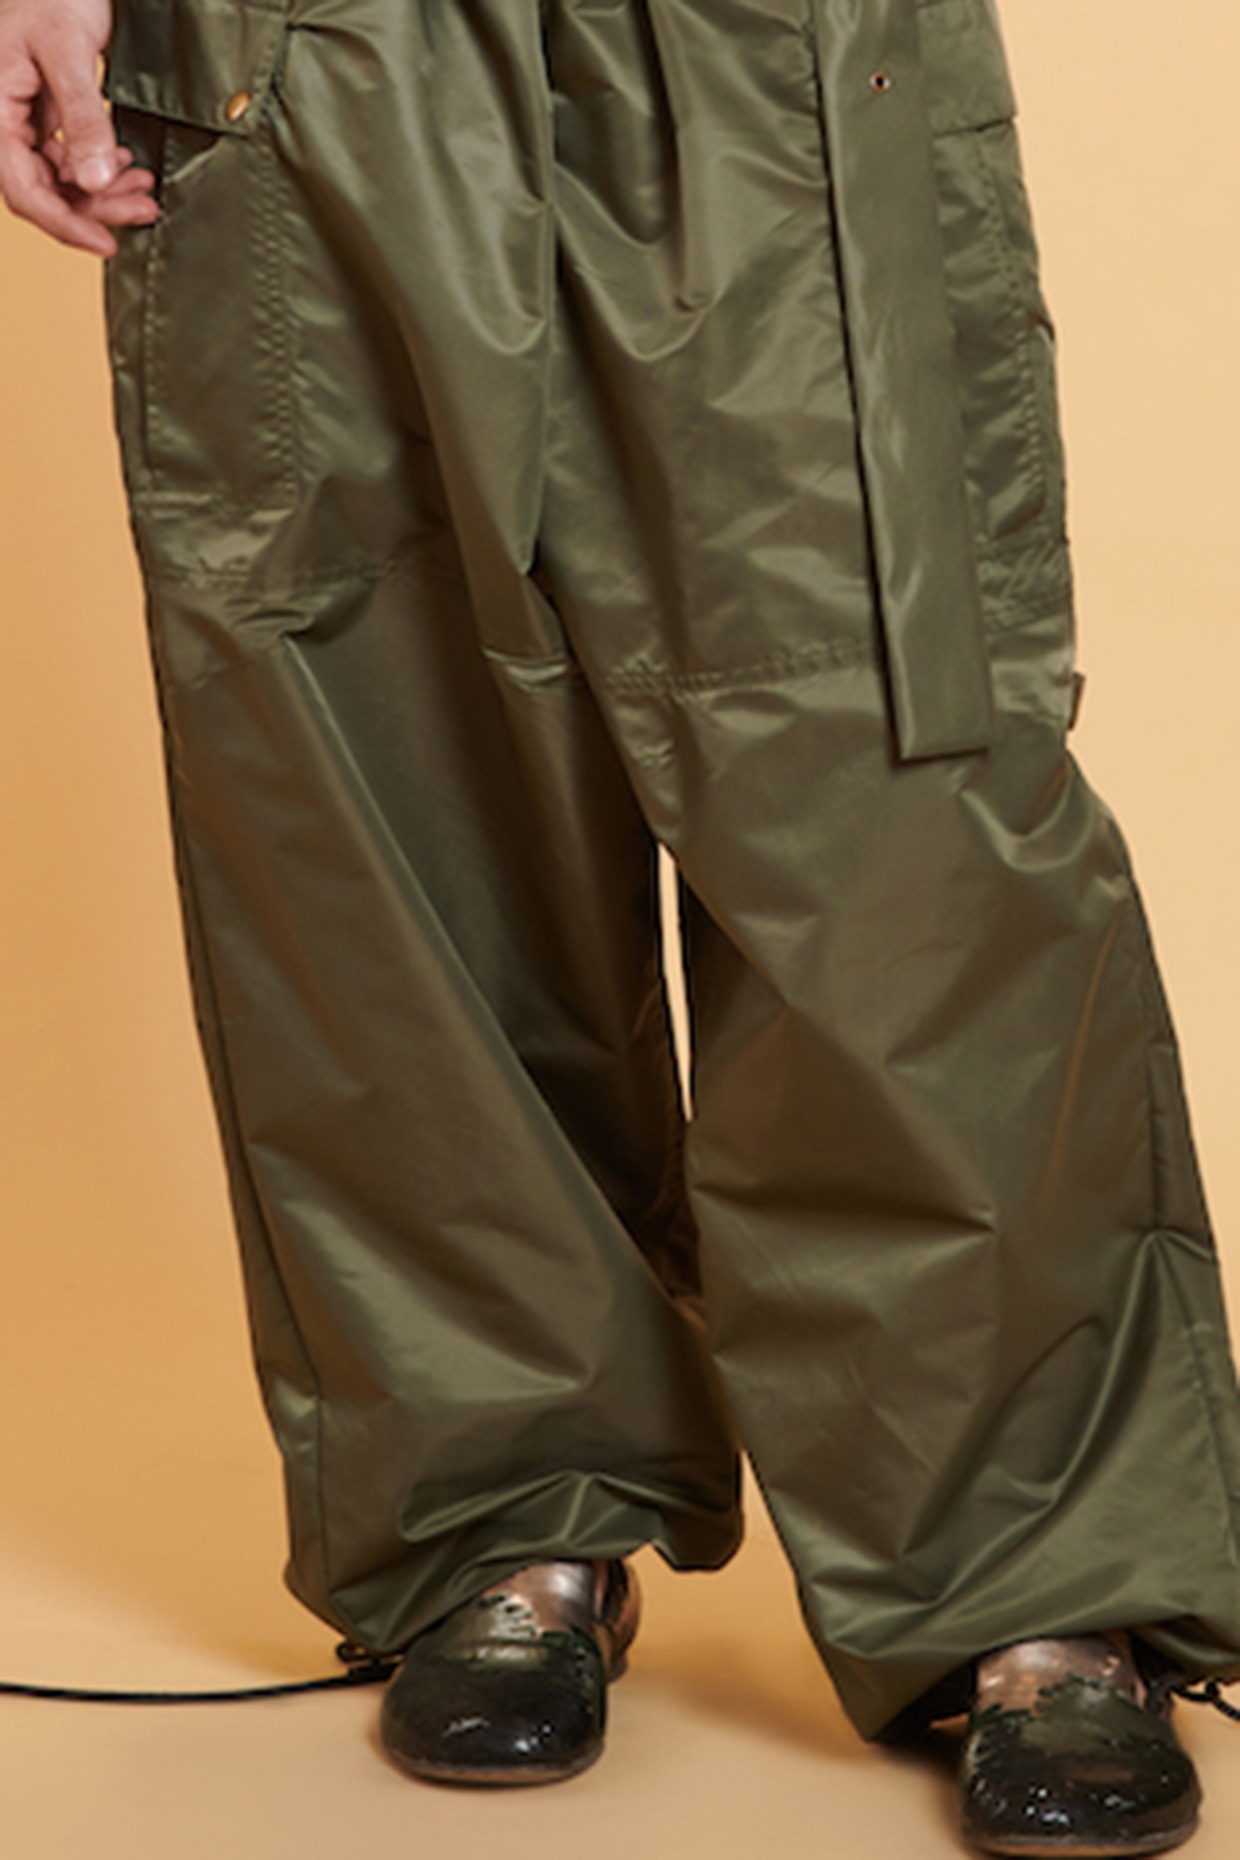 Parachute Pants! 🔋 | Pants outfit men, Green trousers outfit, Green cargo  pants outfit | Pants outfit men, Mens outfits, Cargo pants outfit men